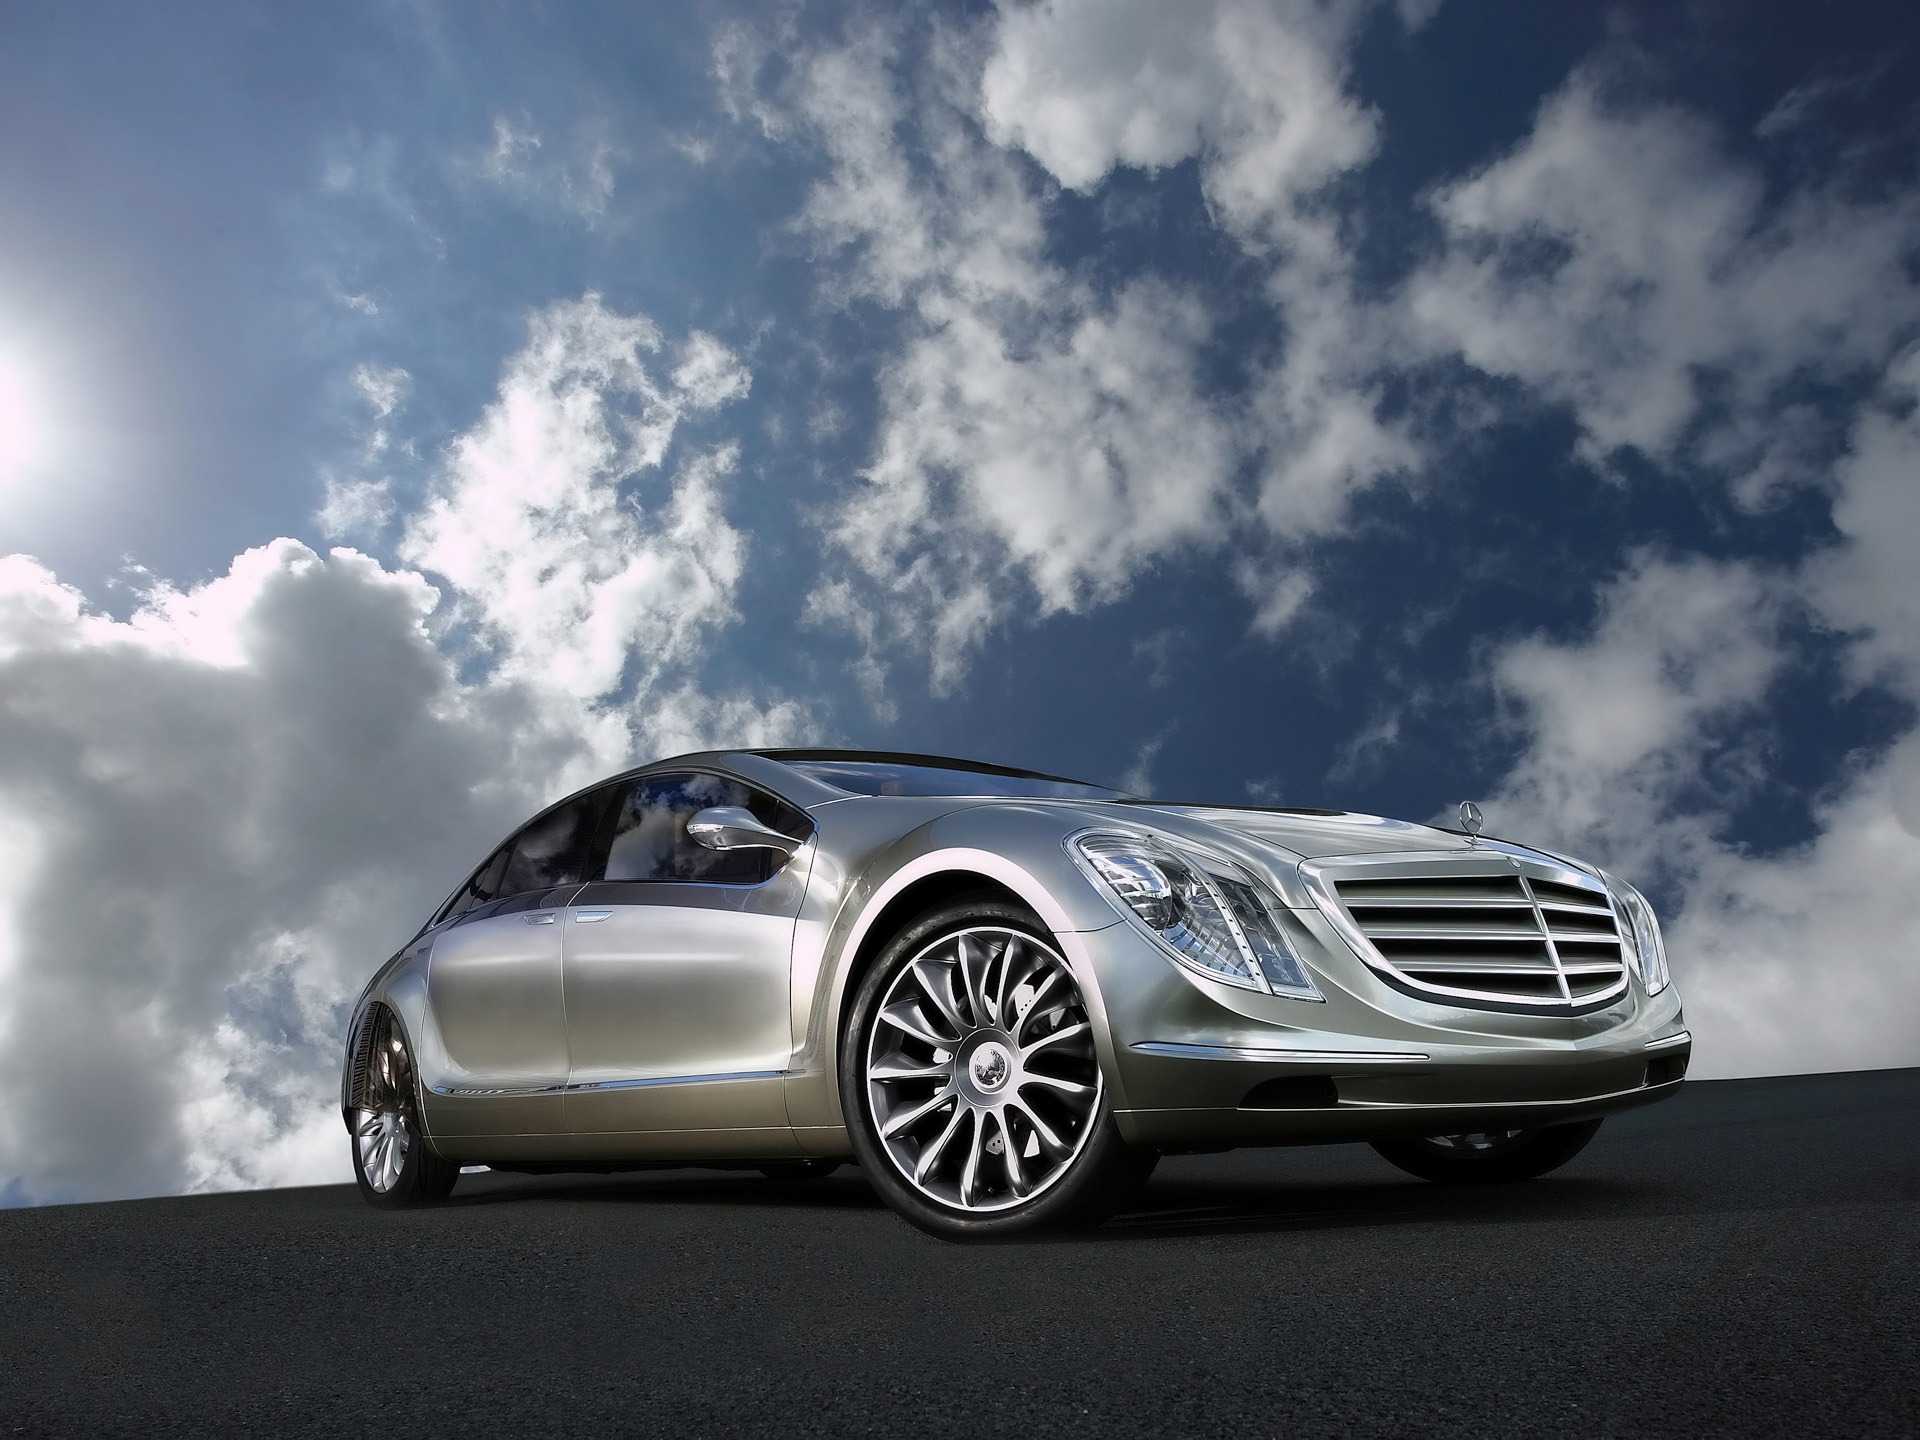 Mercedes Benz Cars Images Hd - HD Wallpaper 